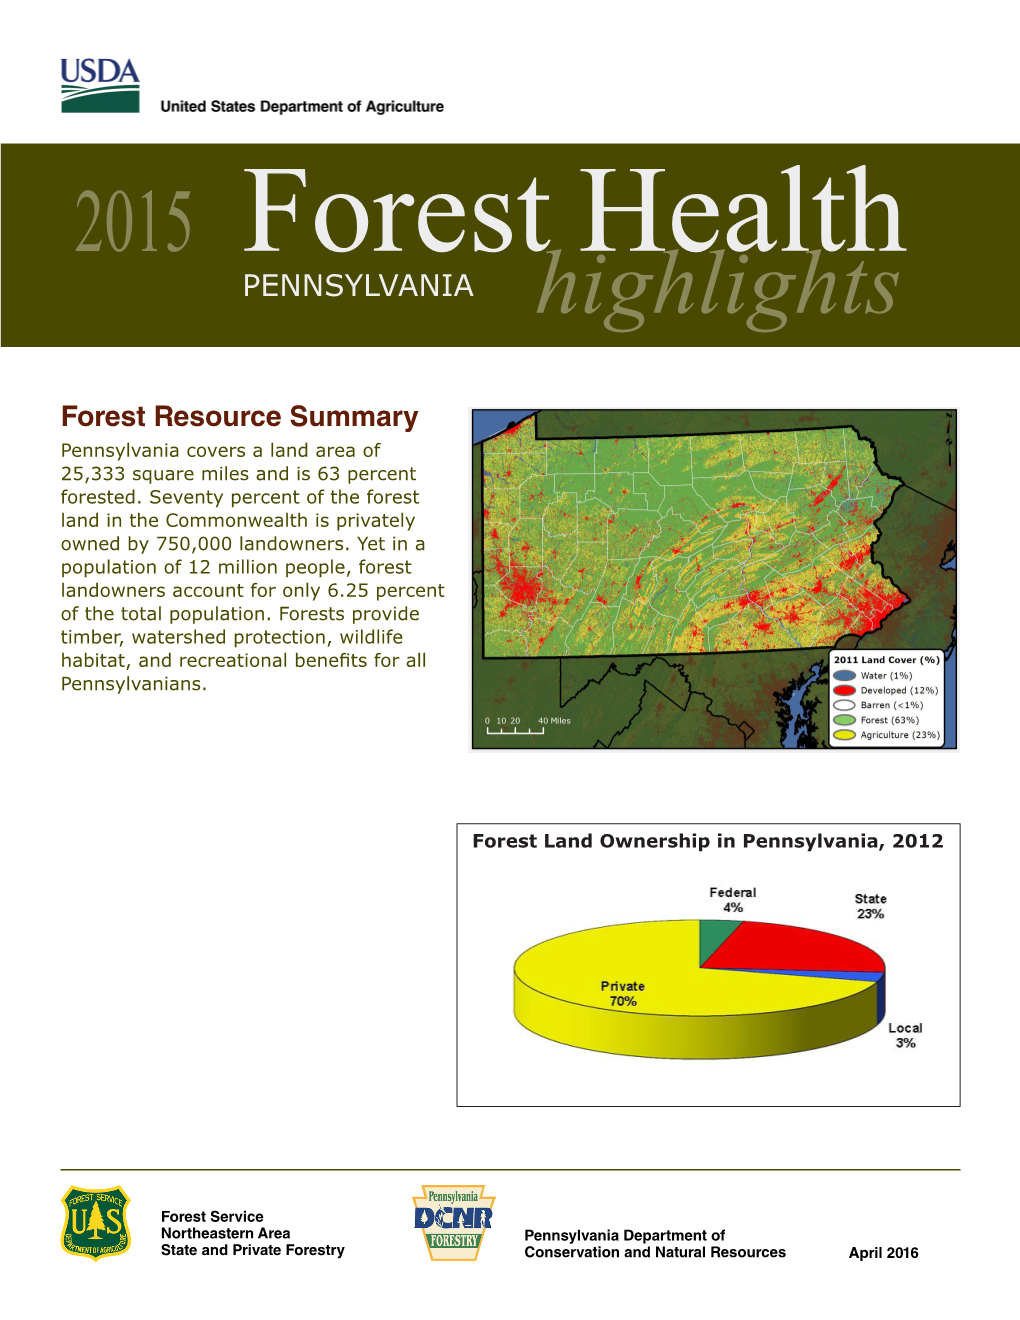 2015 Pennsylvania Forest Health Highlights